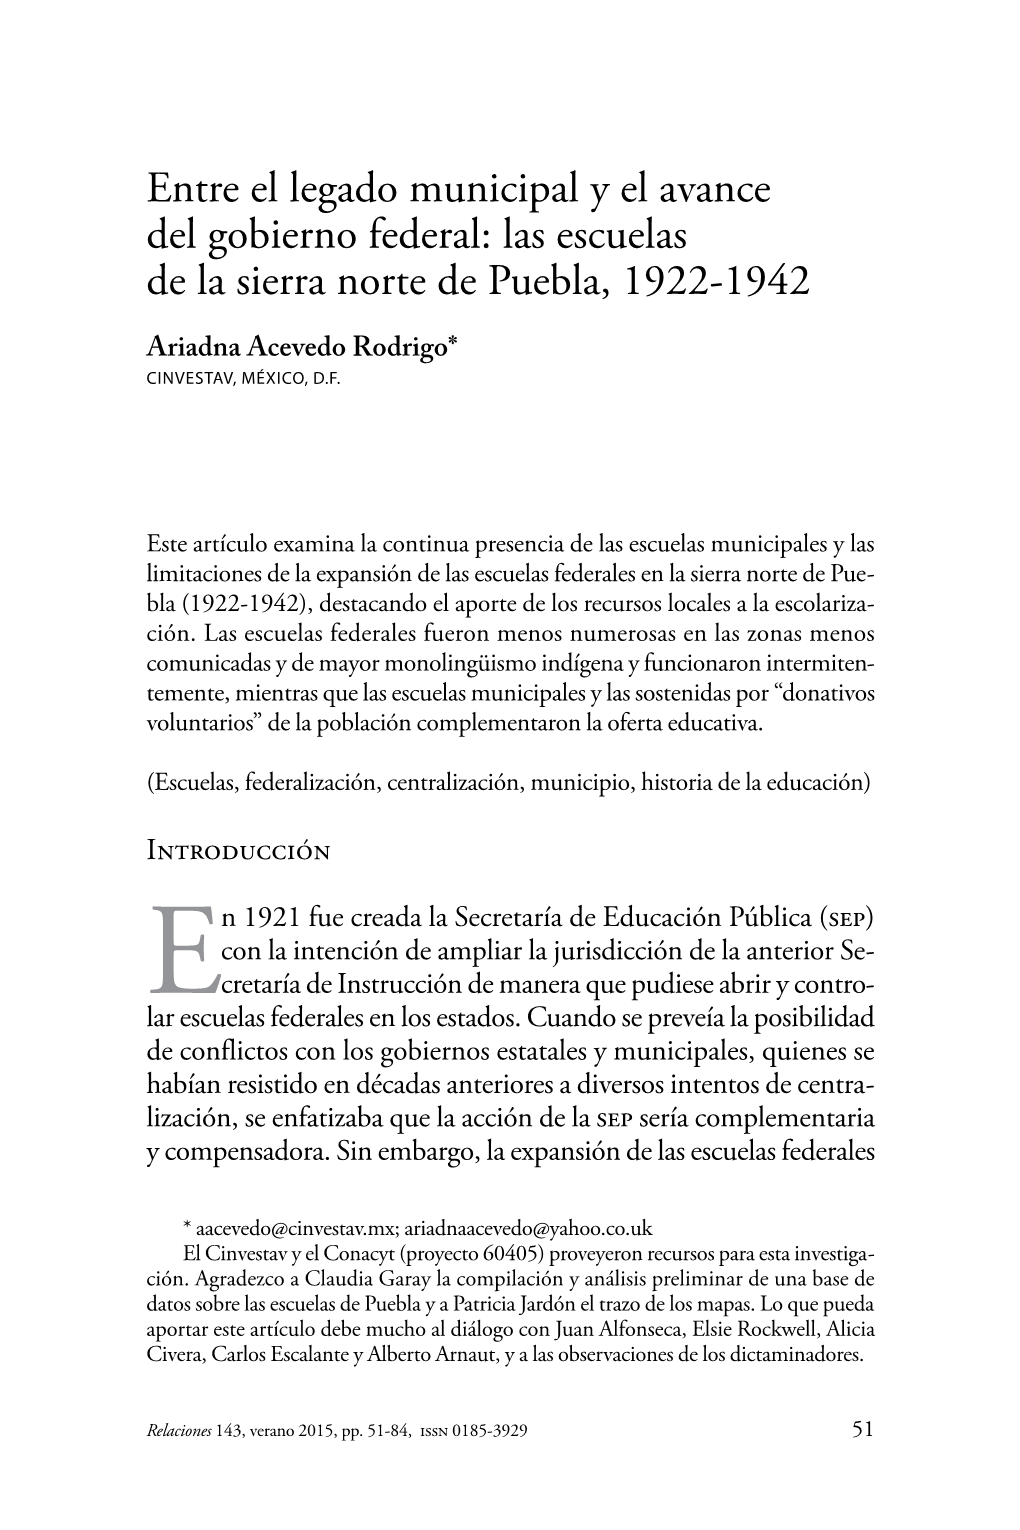 Entre El Legado Municipal Y El Avance Del Gobierno Federal: Las Escuelas De La Sierra Norte De Puebla, 1922-1942